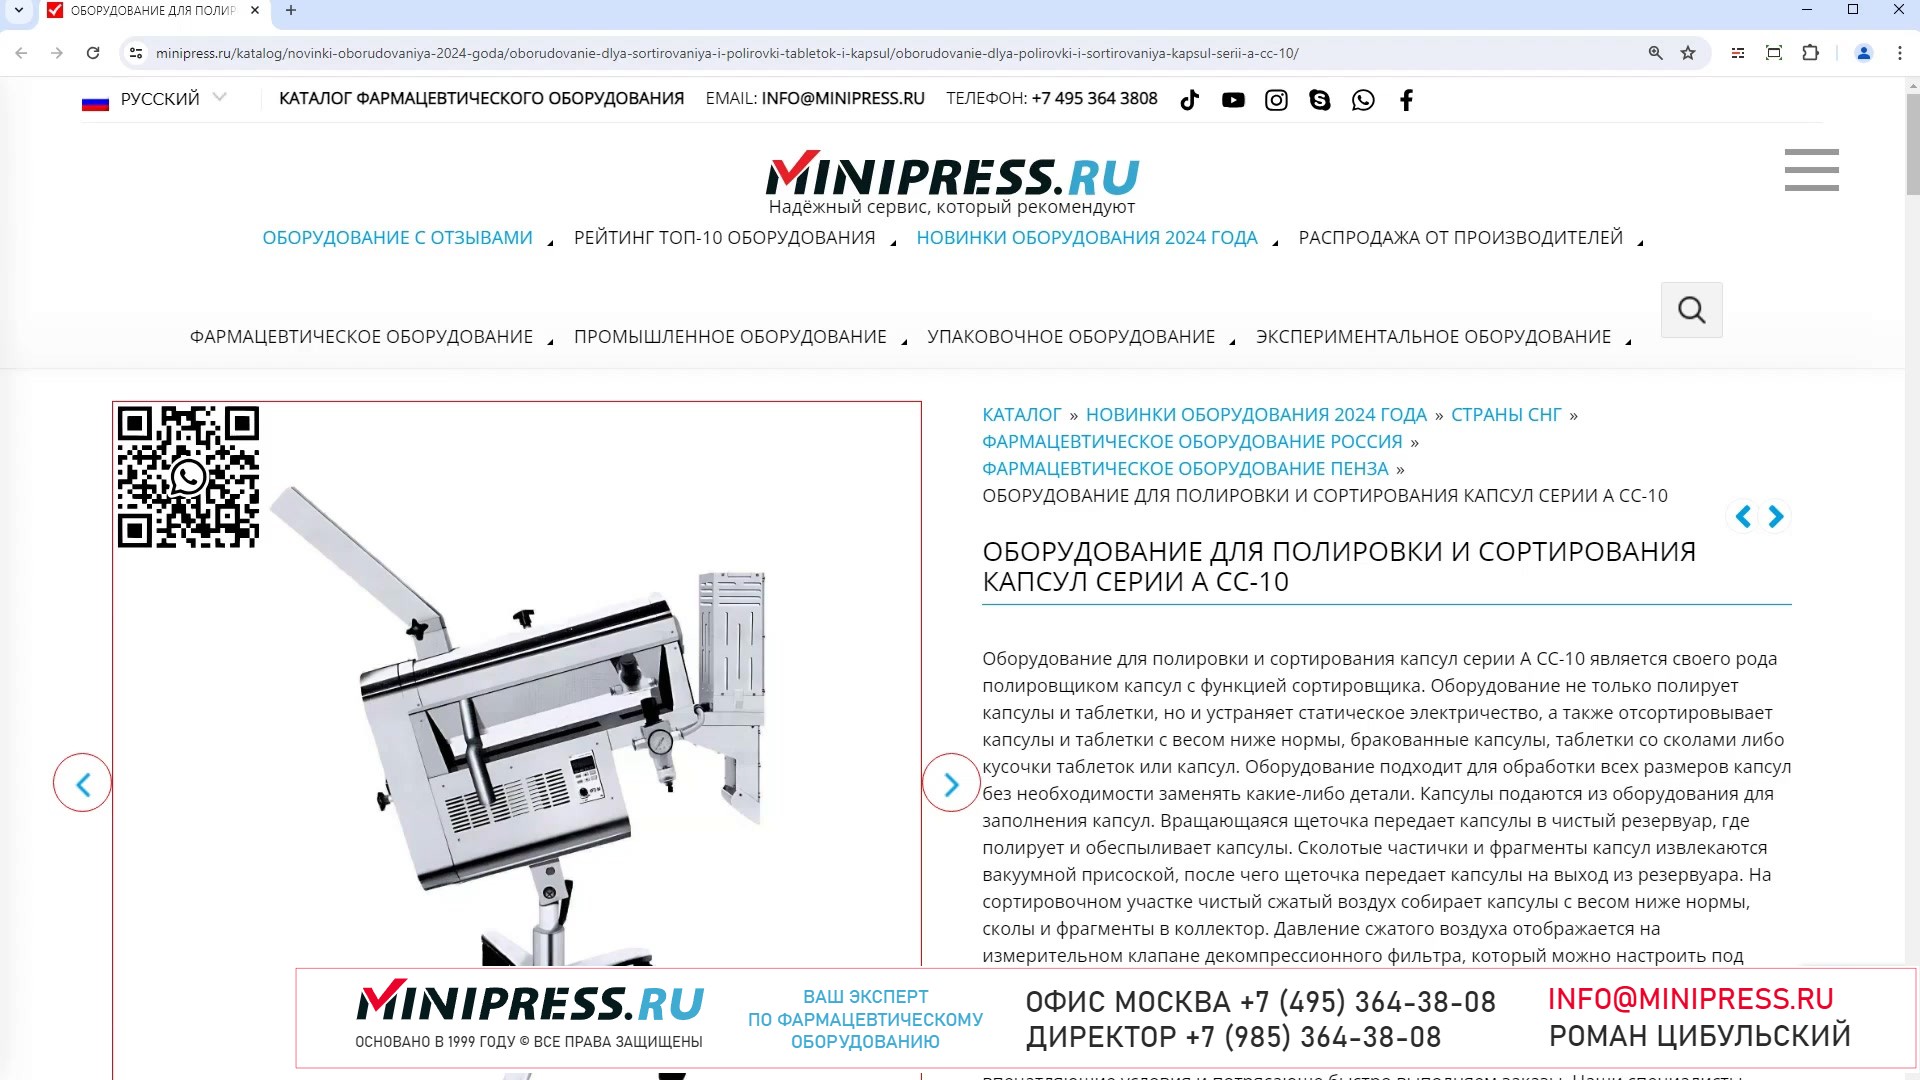 Minipress.ru Оборудование для полировки и сортирования капсул серии А CC-10